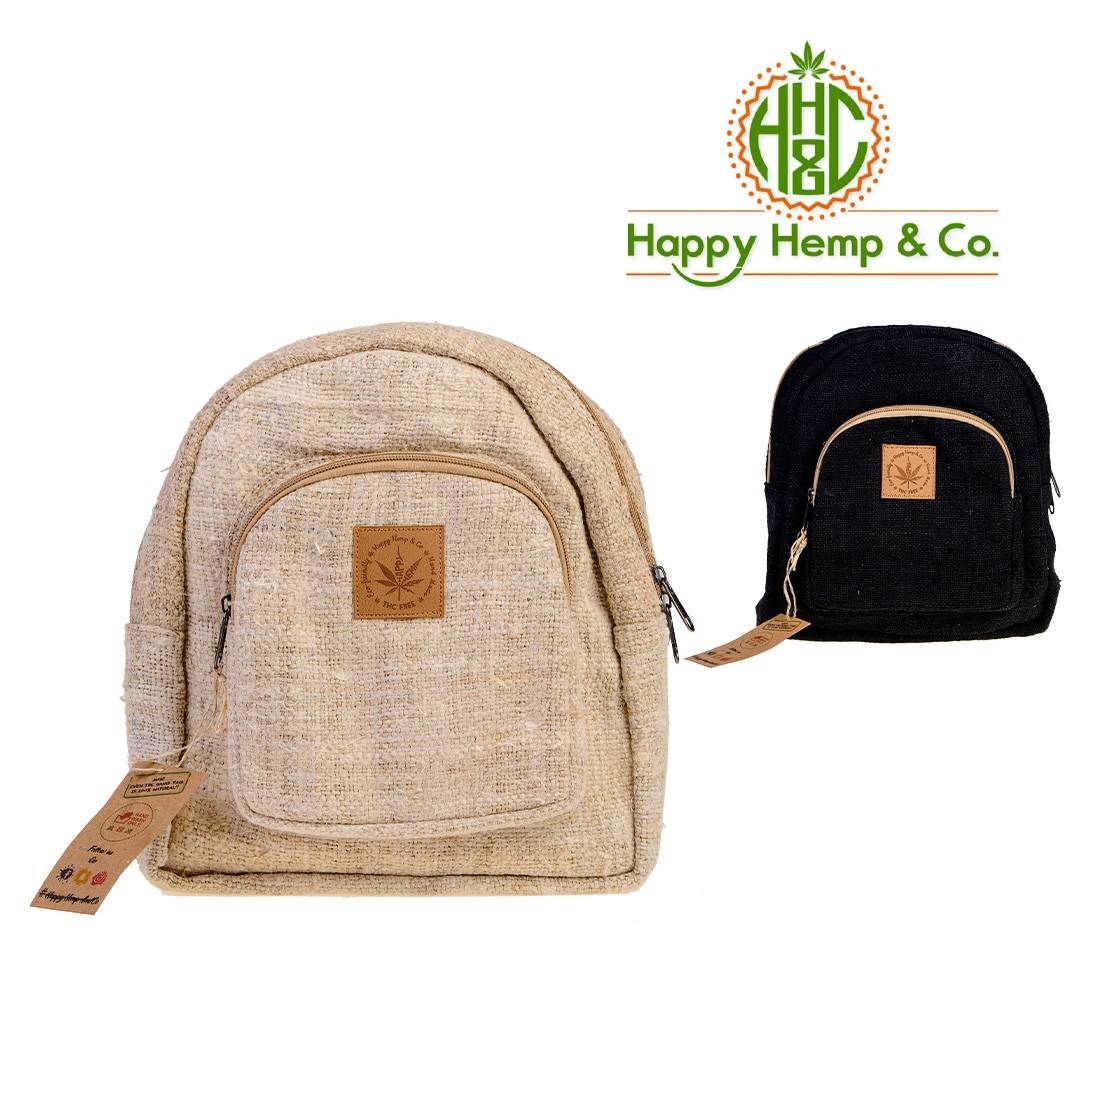 Mini sac à dos Happy Hemp and Co - Dispo en 2 coloris chez S Factory !